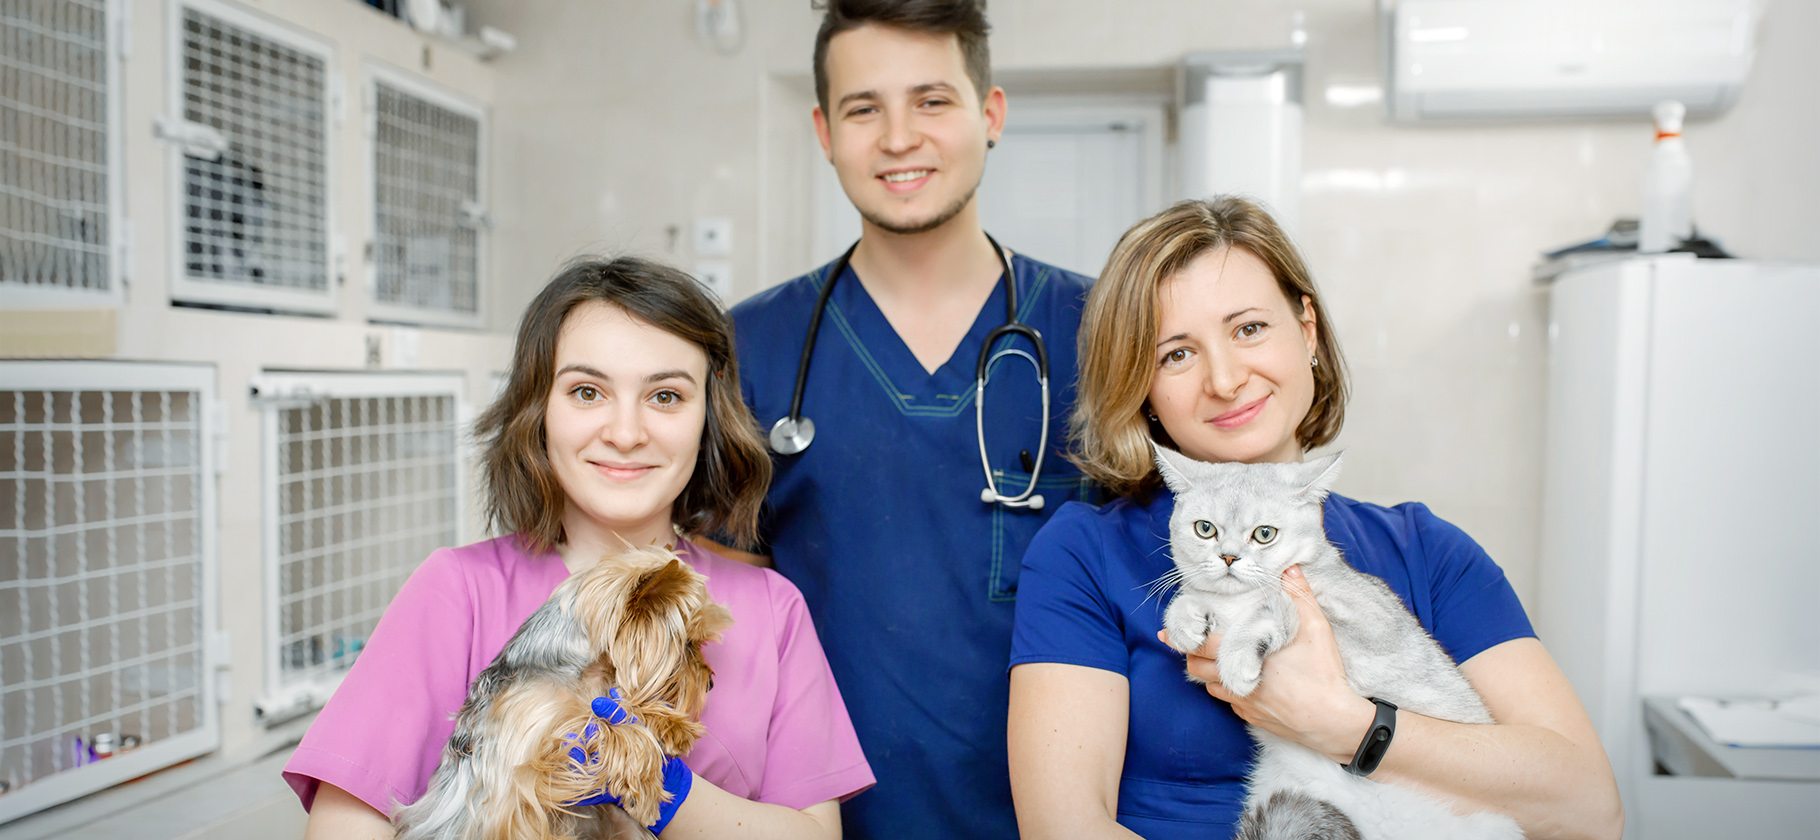 Как выбрать ветеринарную клинику и врача